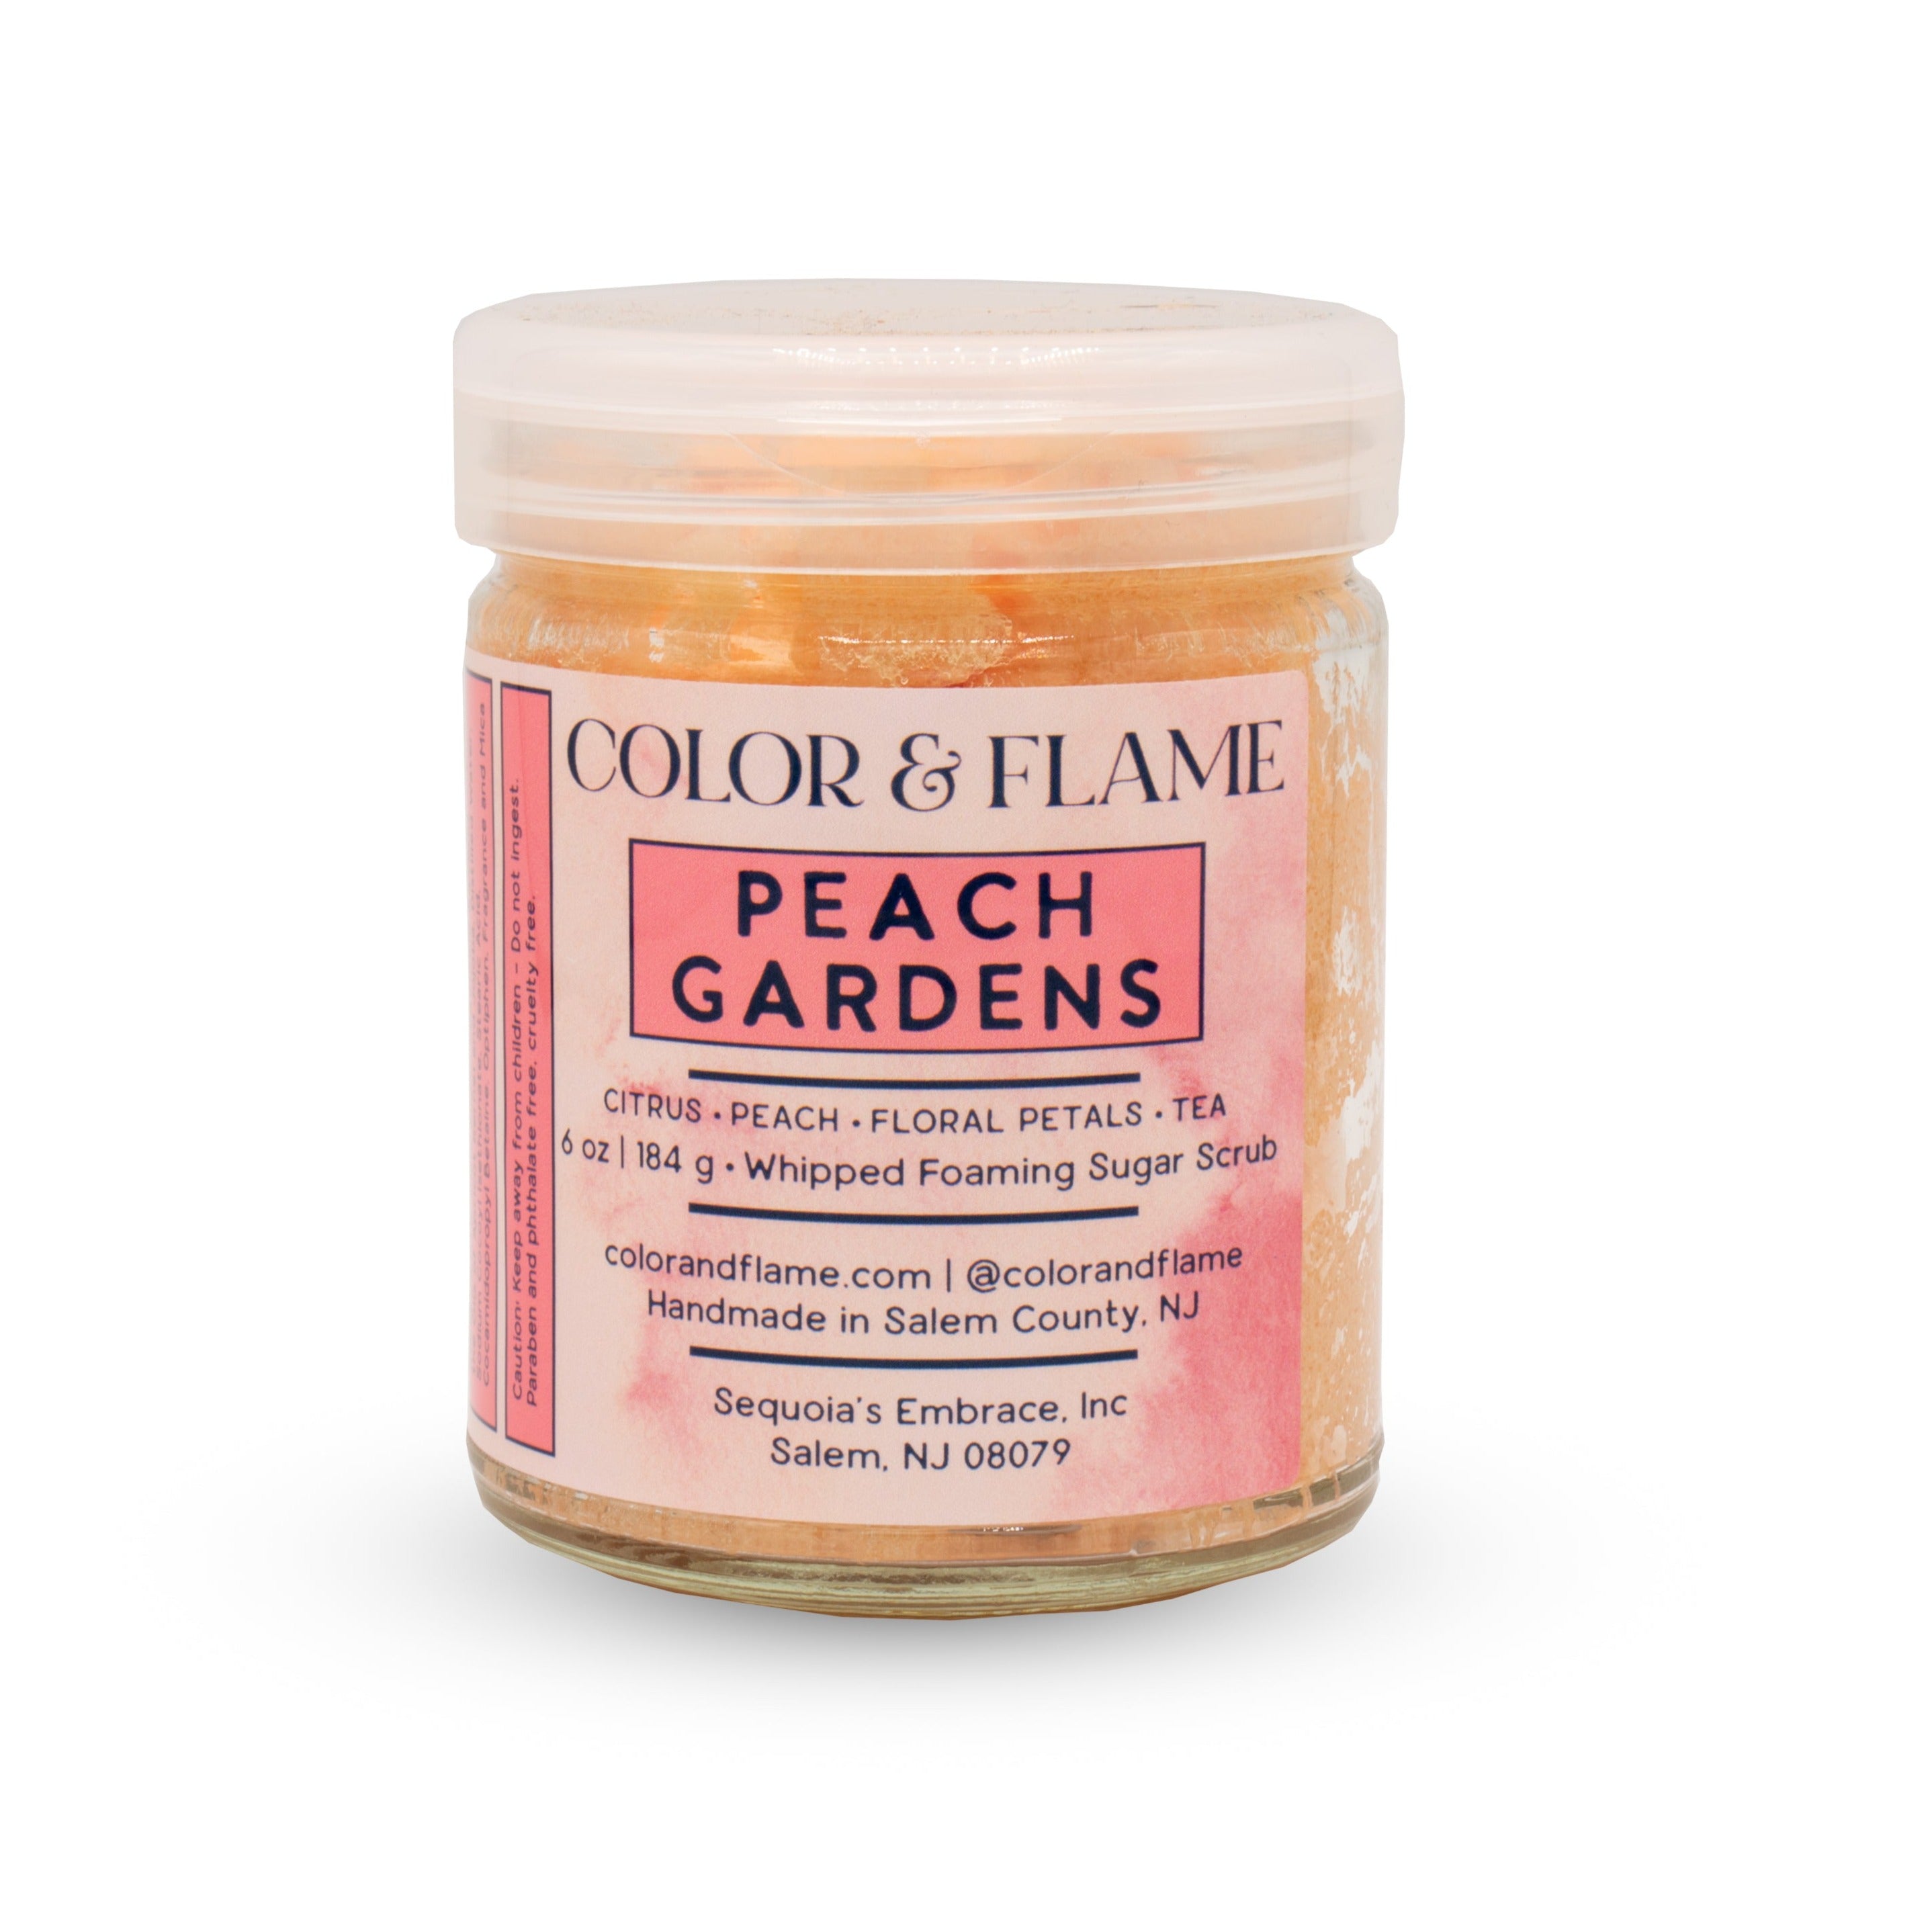 Peach Gardens - Whipped Foaming Sugar Scrub